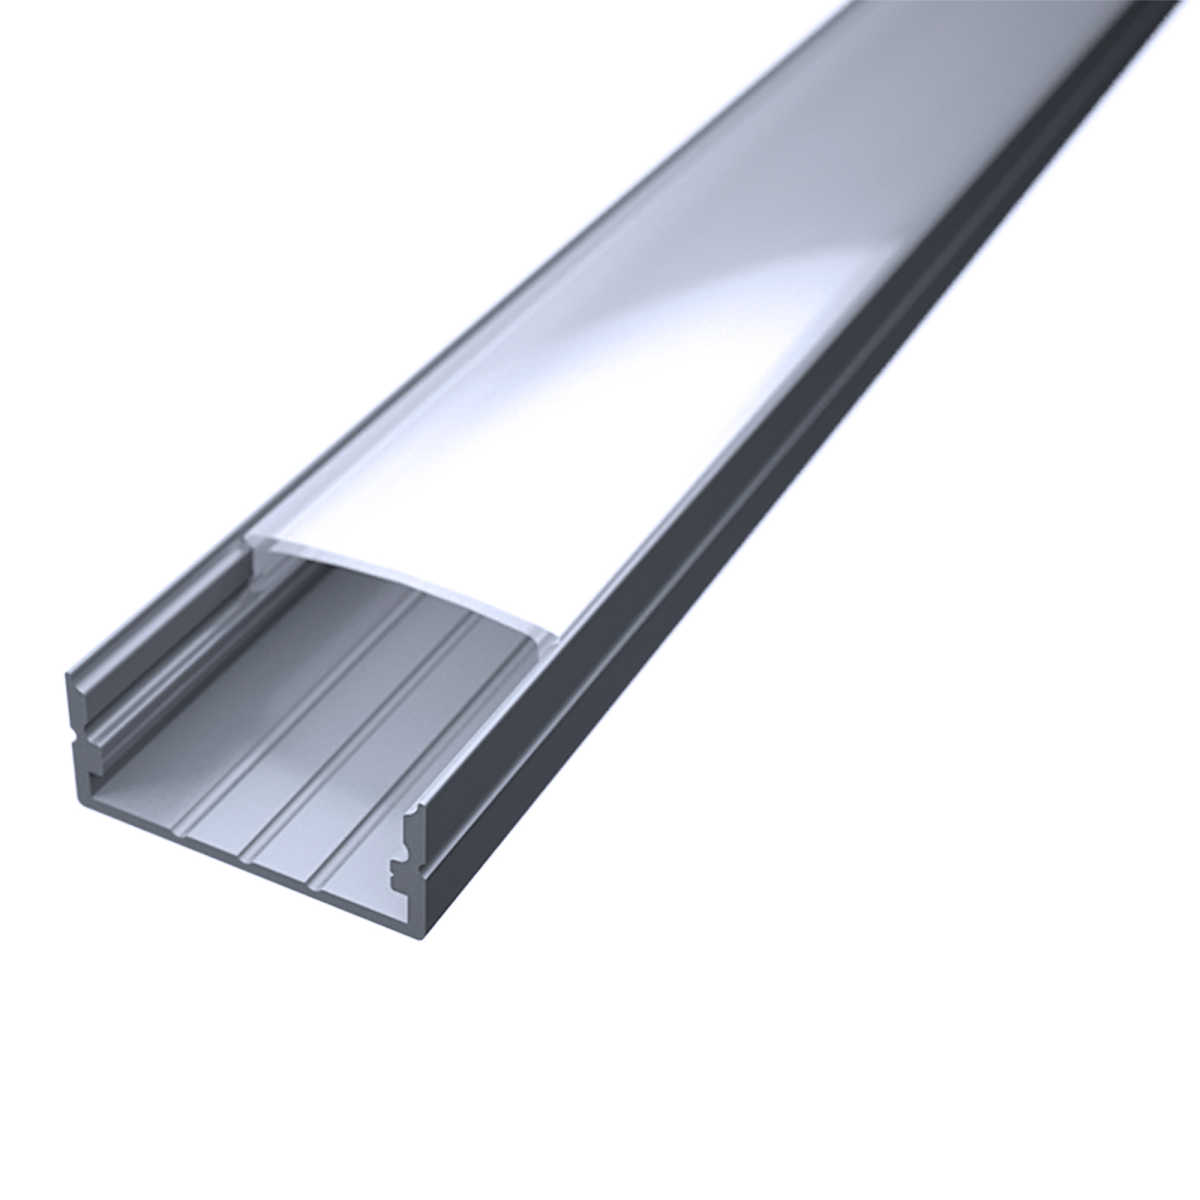 LED Flachprofil "Slim-Line max" | Abdeckung diffus | Zuschnitt auf 110cm |